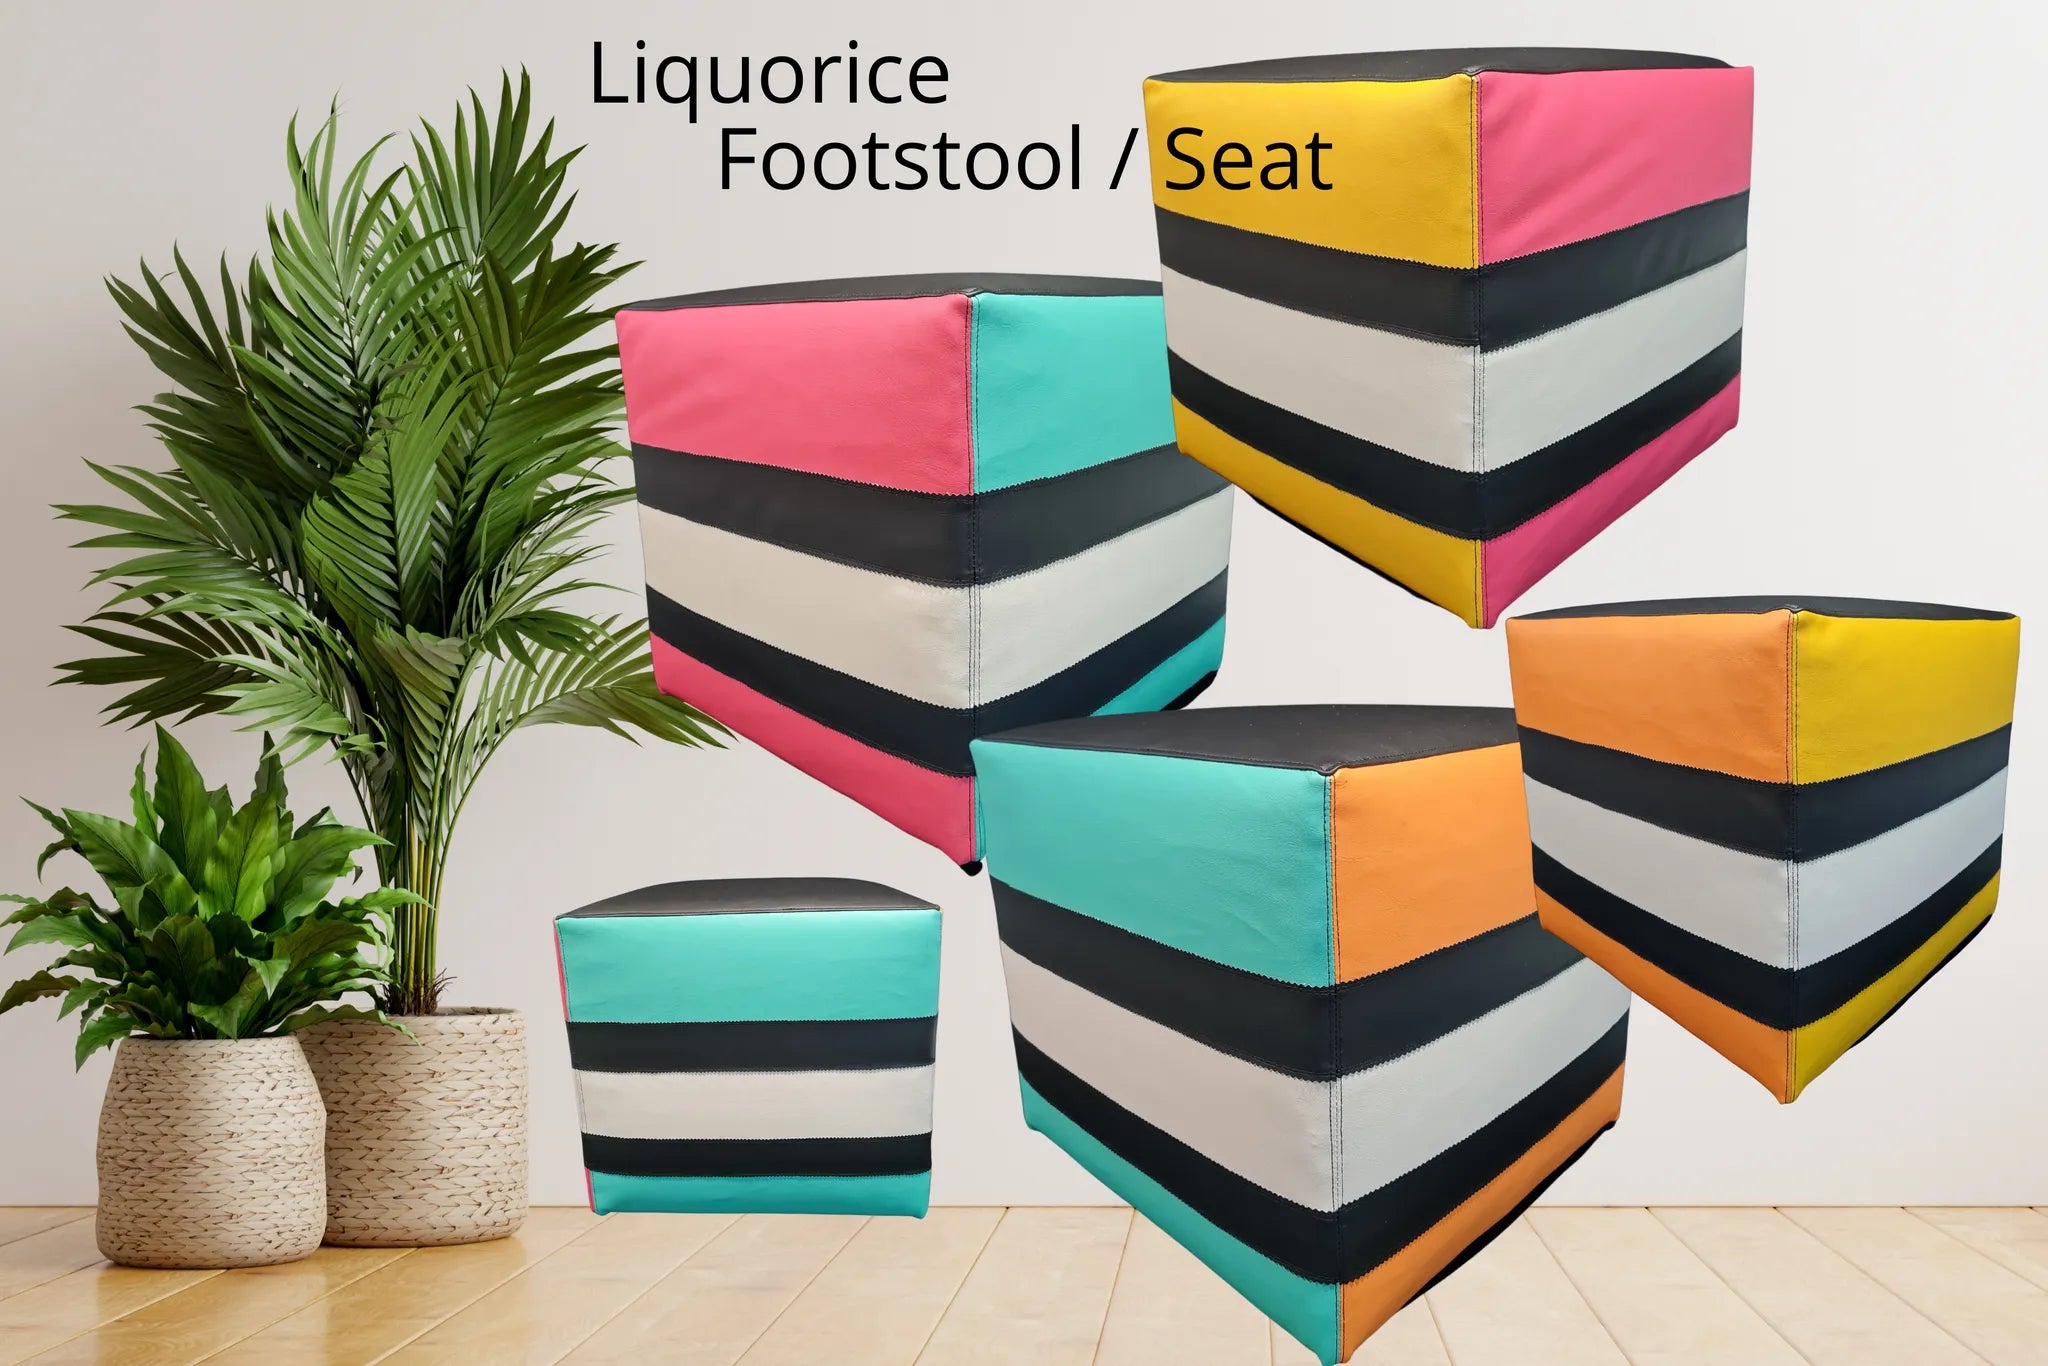 Liquorice Footstool / Seat